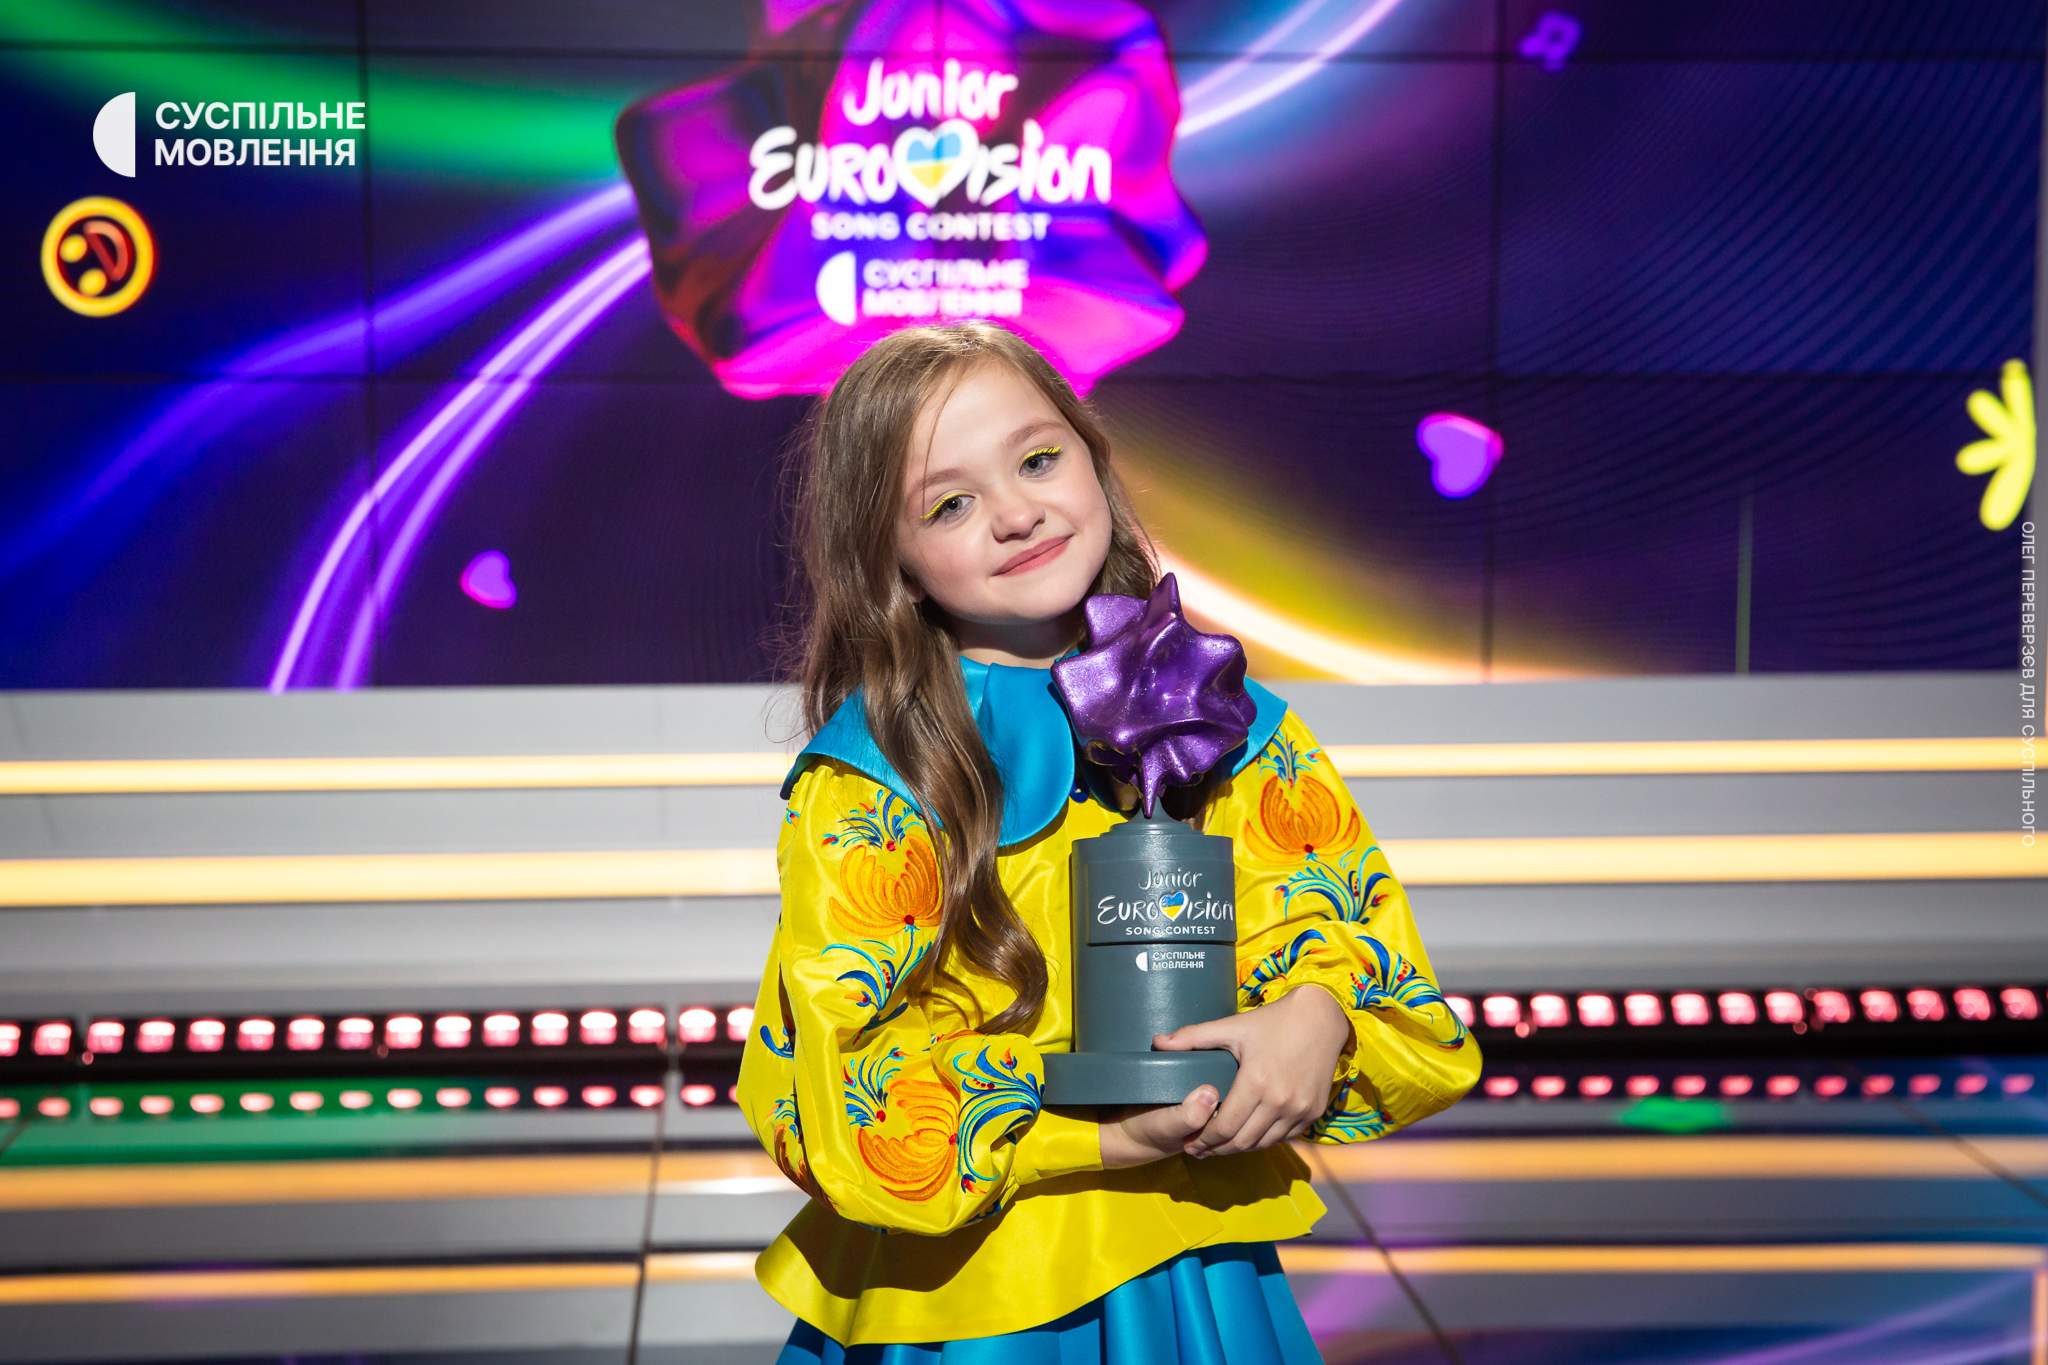 Дитяче Євробачення: оголошено переможця конкурсу 2023 року (відео)